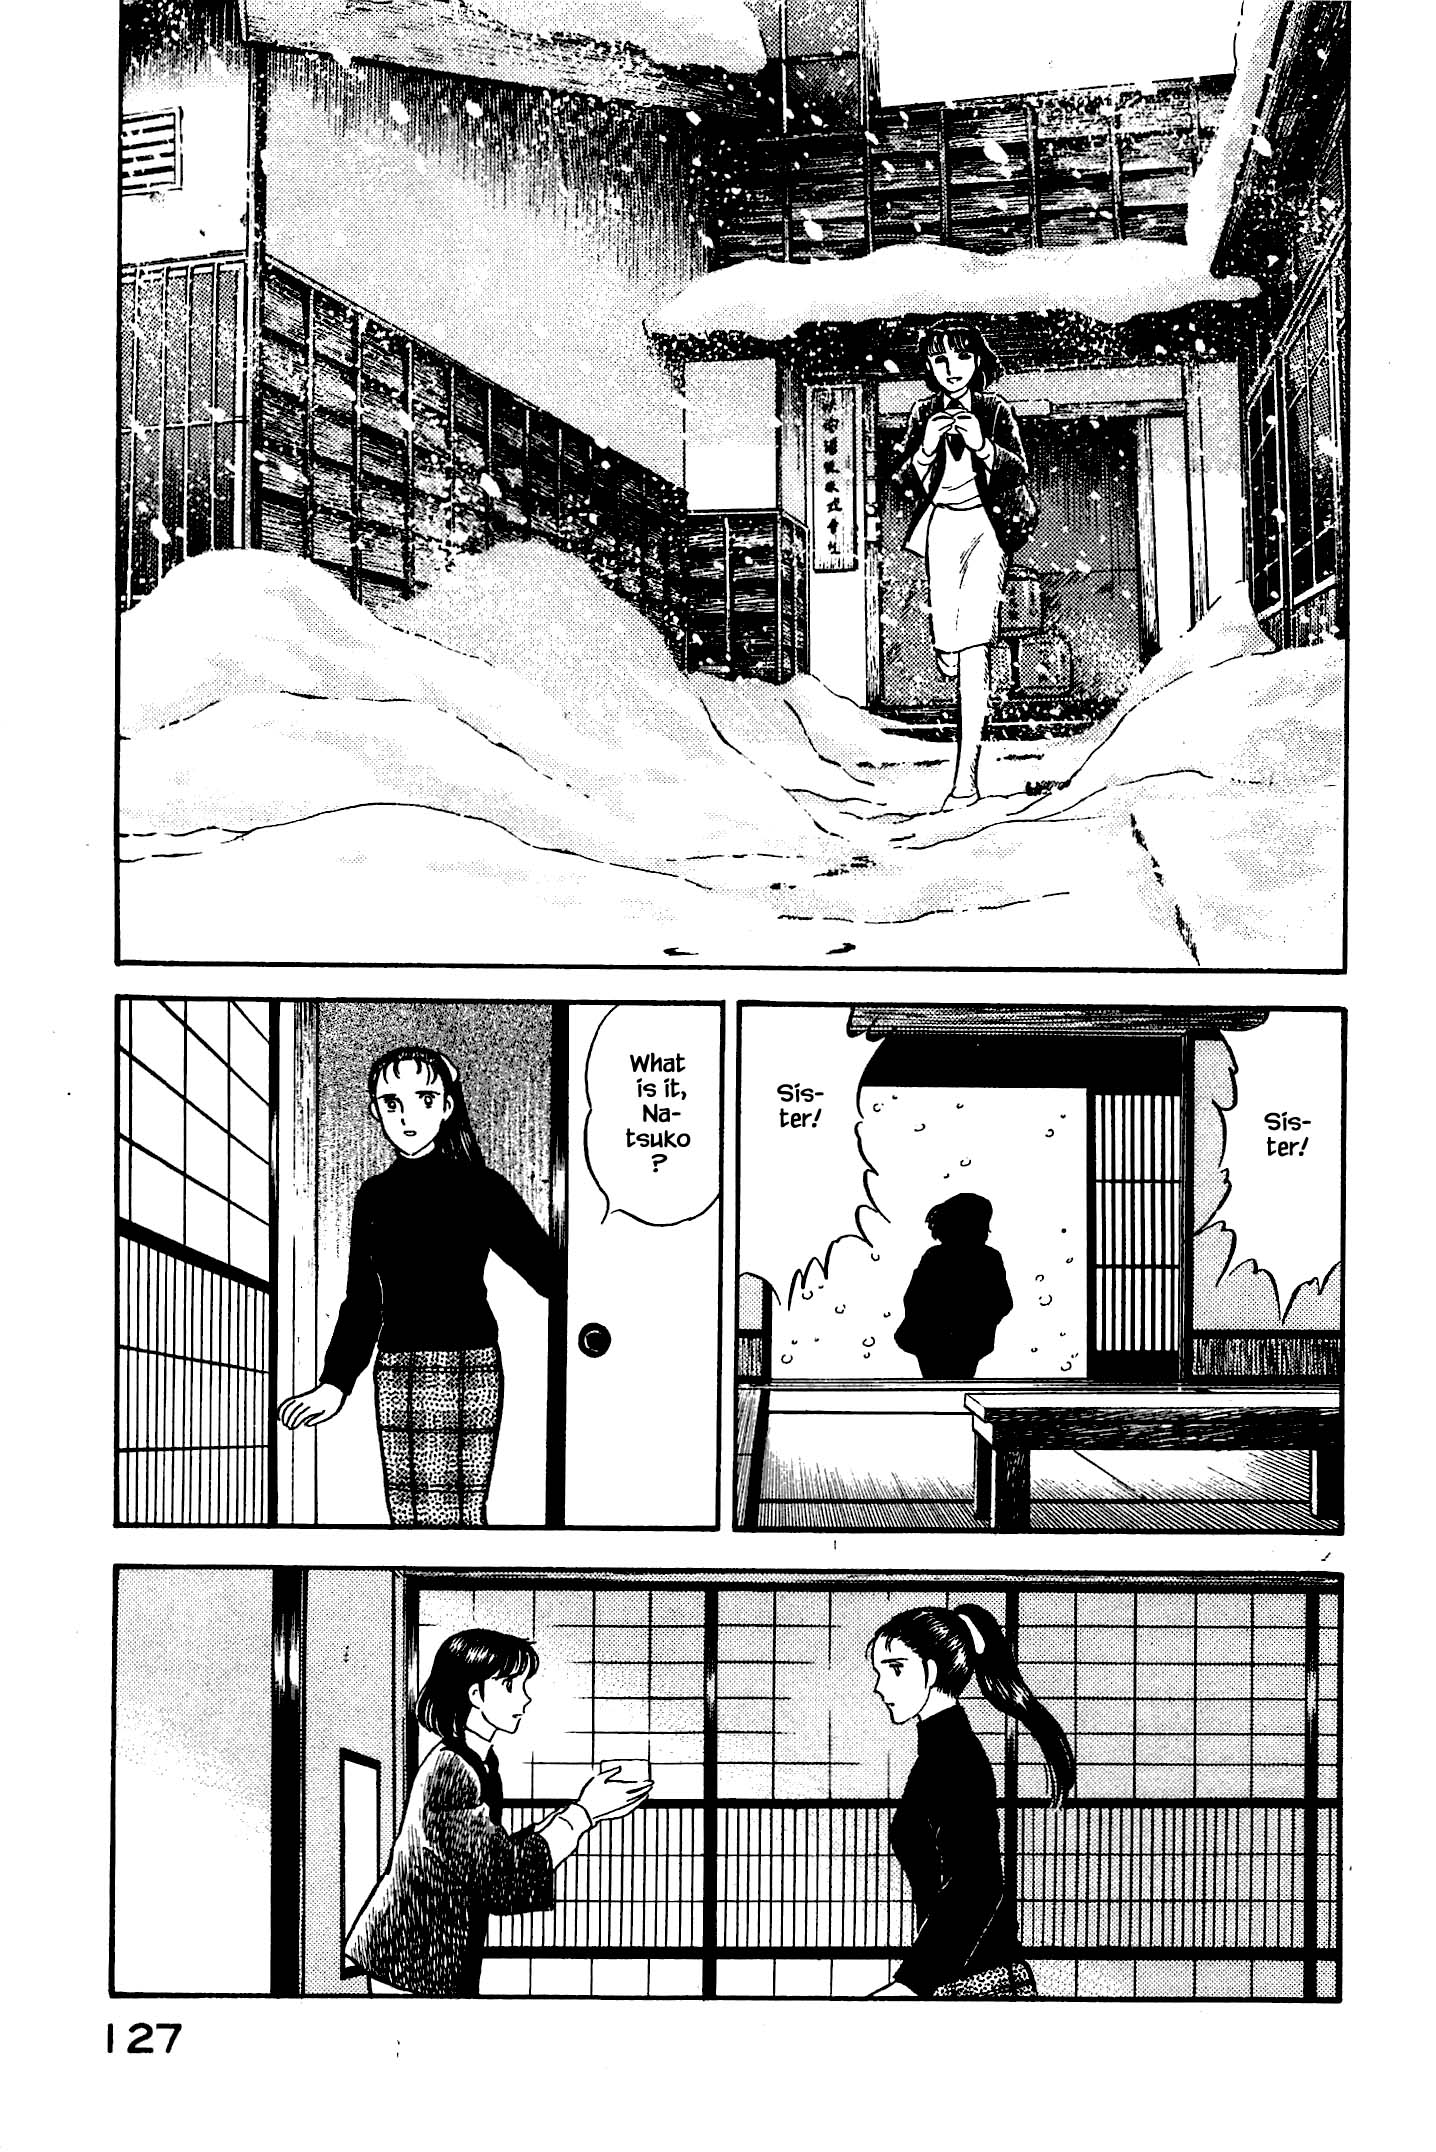 Natsuko's Sake - chapter 127 - #6